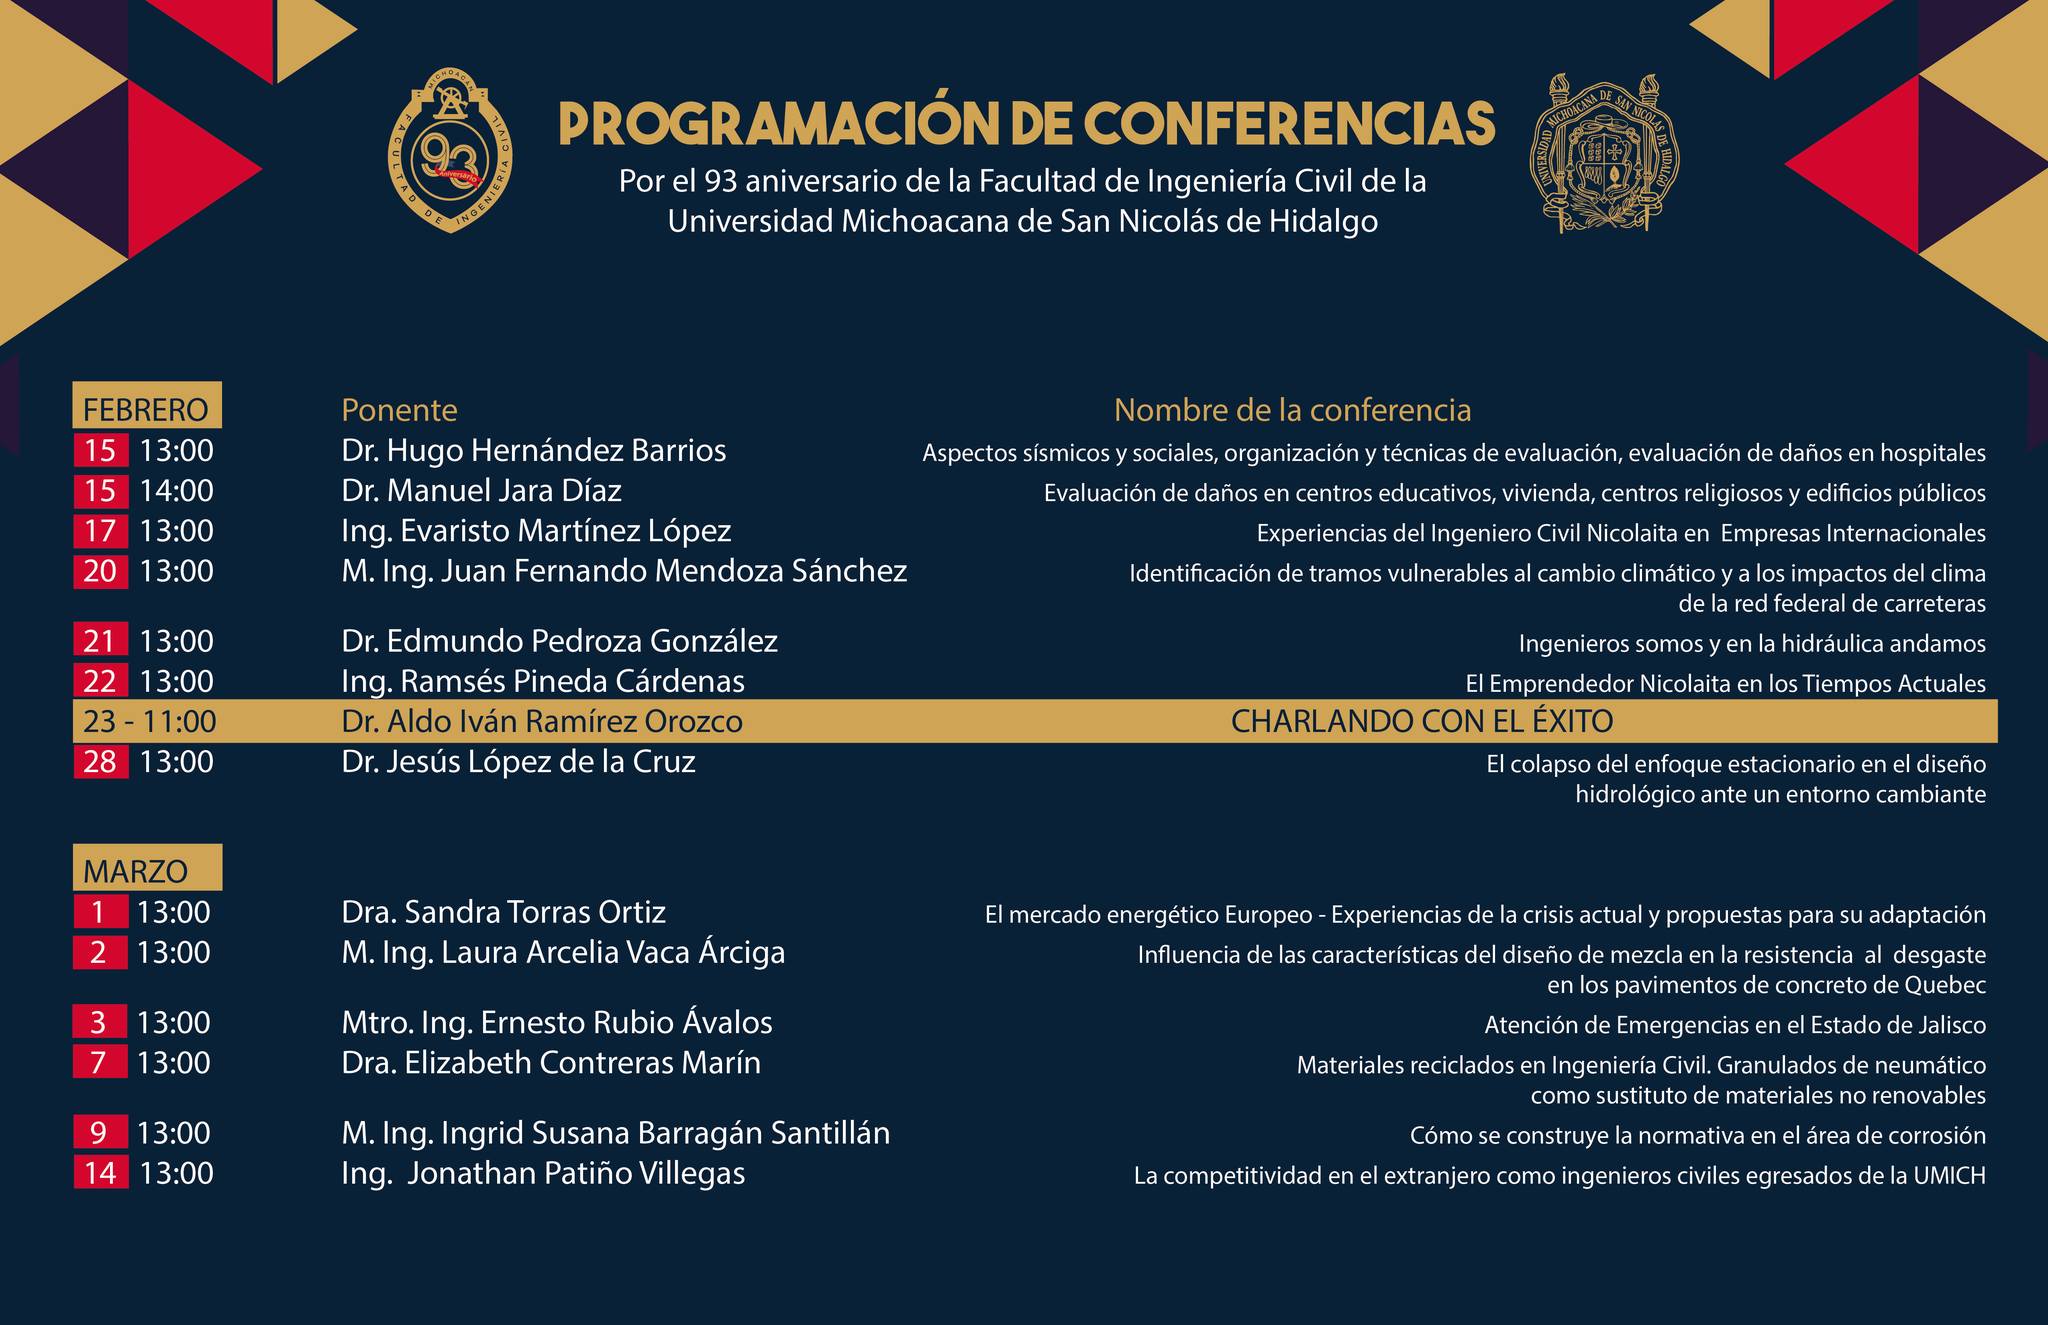 Consulta la programación de ponencias y conferencias en el marco del 93 aniversario de la Facultad de Ingeniería Civil de la UMSNH.